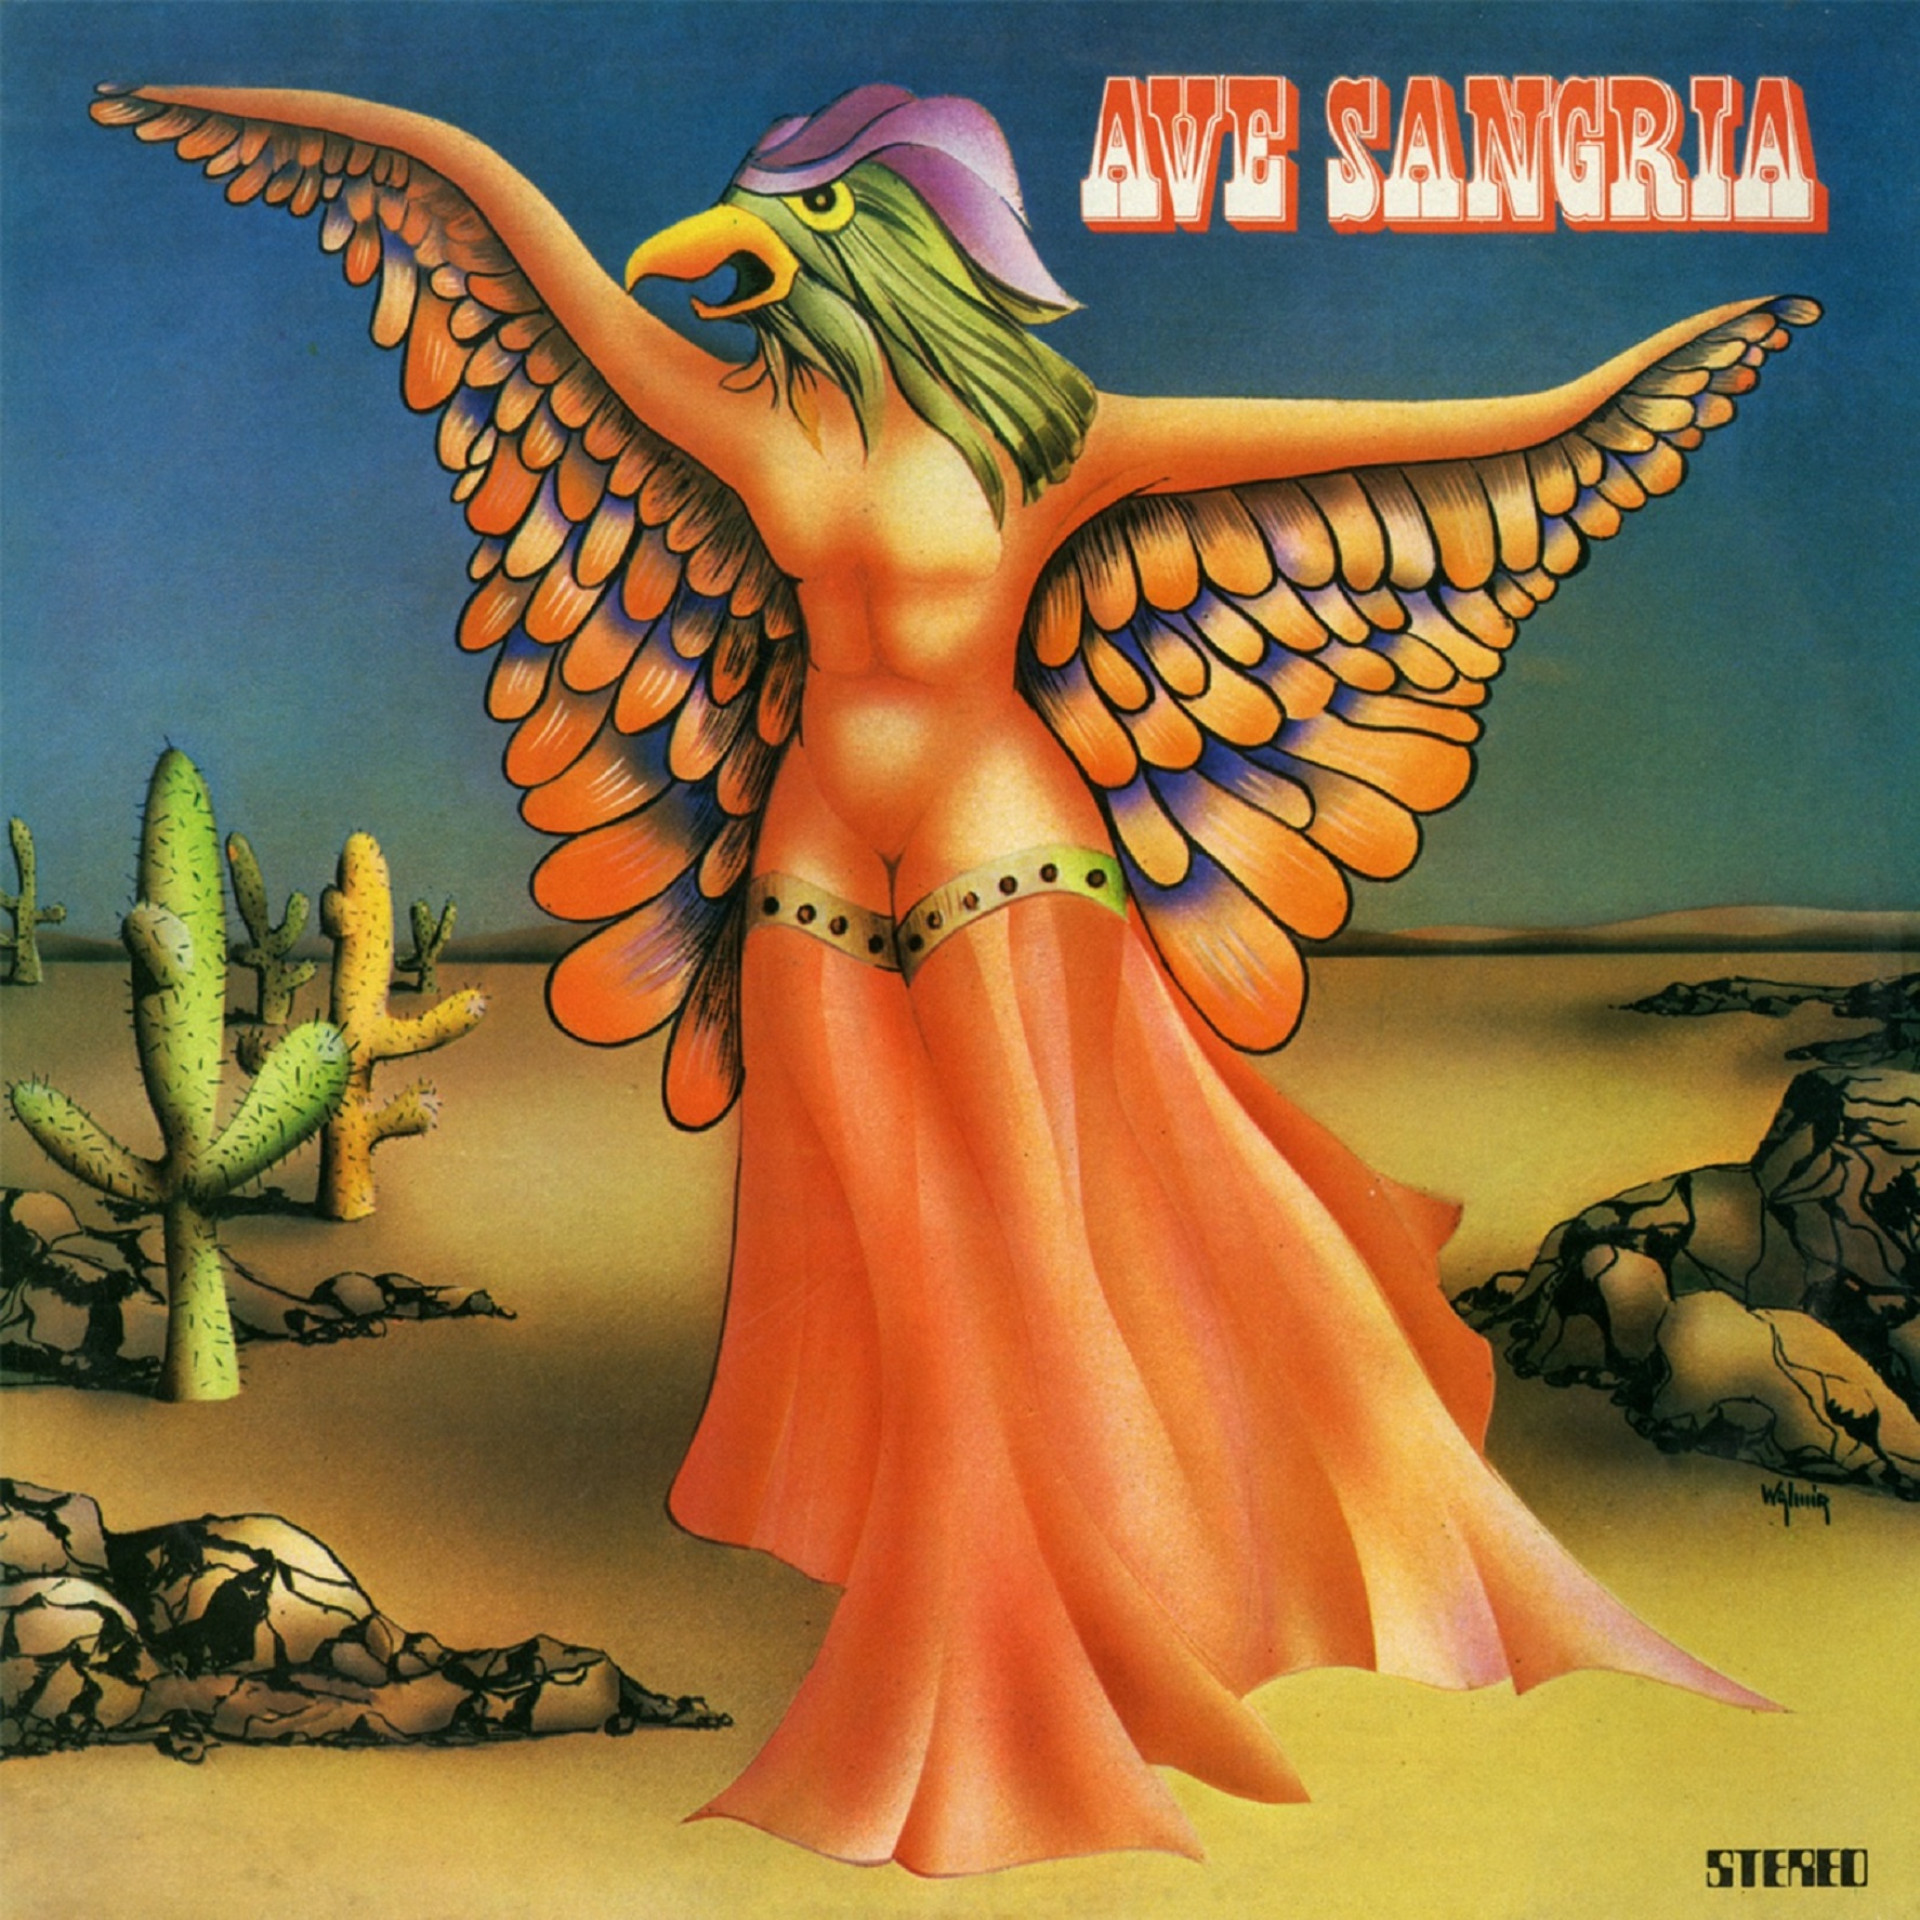 Capa do disco de estreia da banda Ave Sangria, de 1974(Foto: Divulgação)